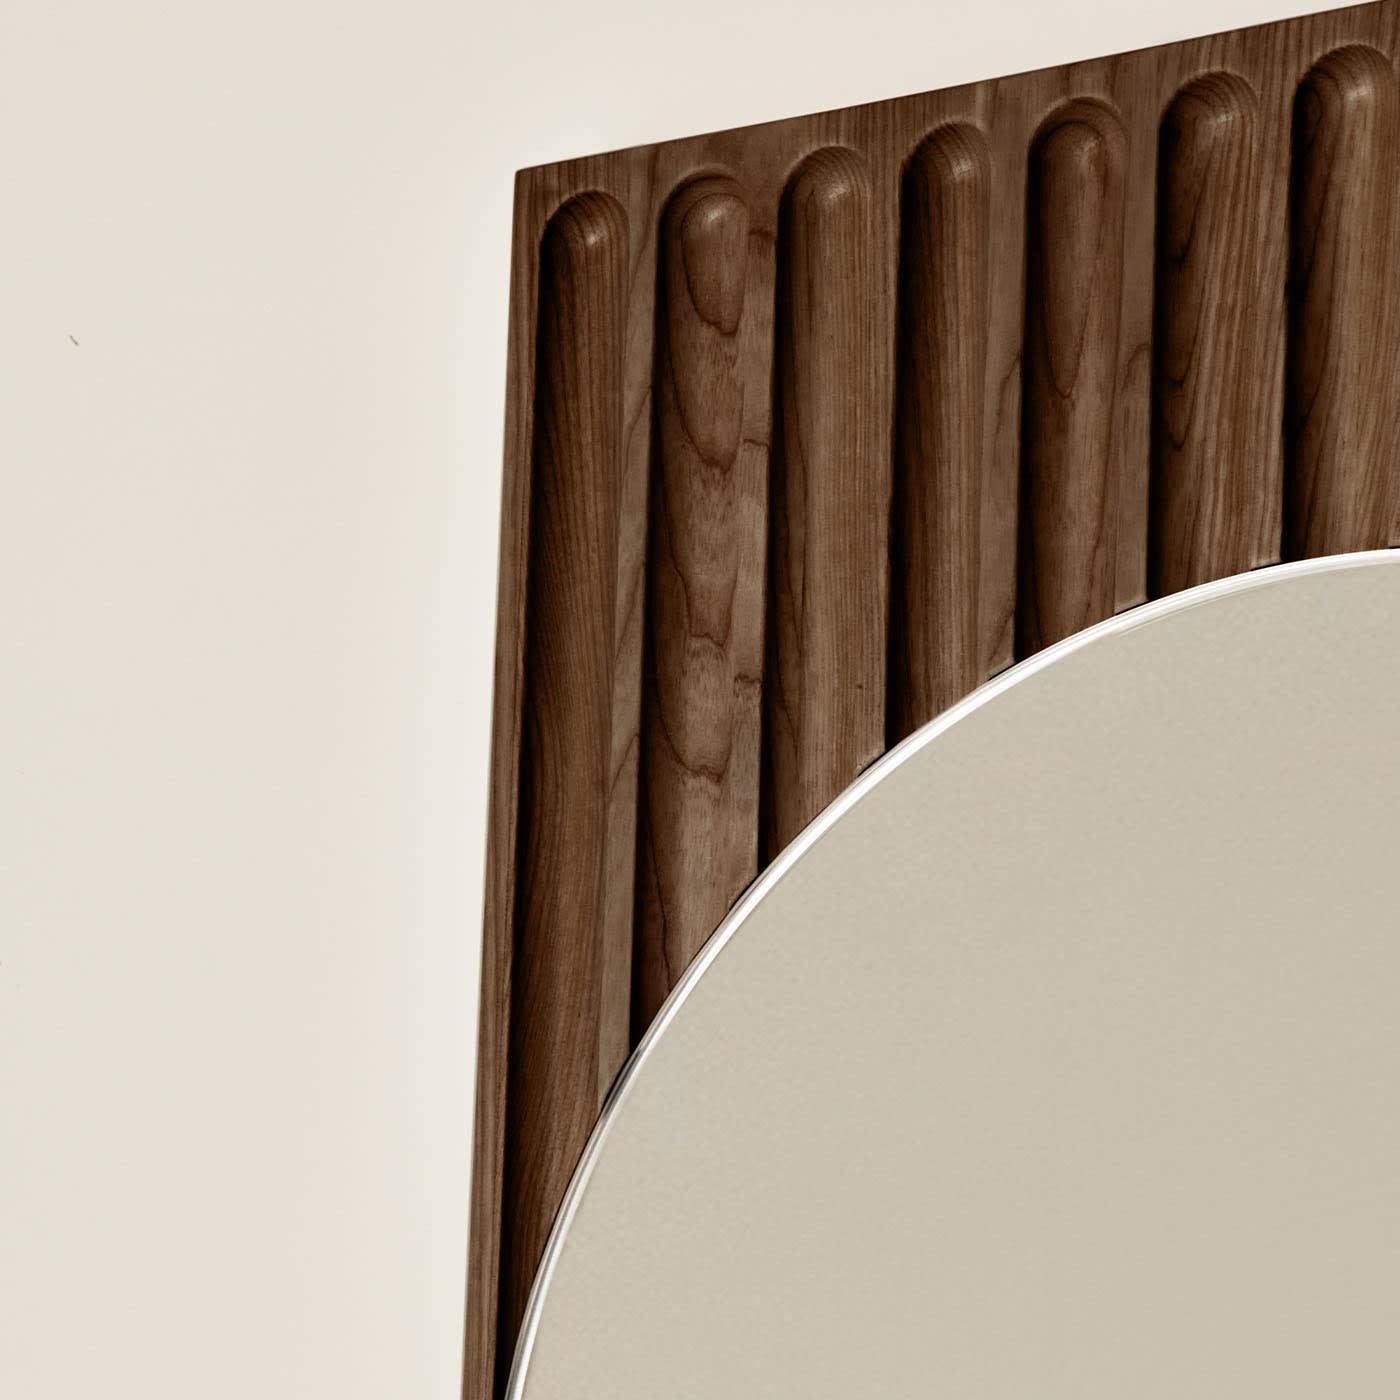 Les miroirs Tutto Sesto font partie de la collection 2023 de meubles contemporains en bois massif. Née du dialogue entre Dale Italia et Cono Studio, la gamme se définit par une esthétique essentielle, en phase avec les tendances actuelles sans